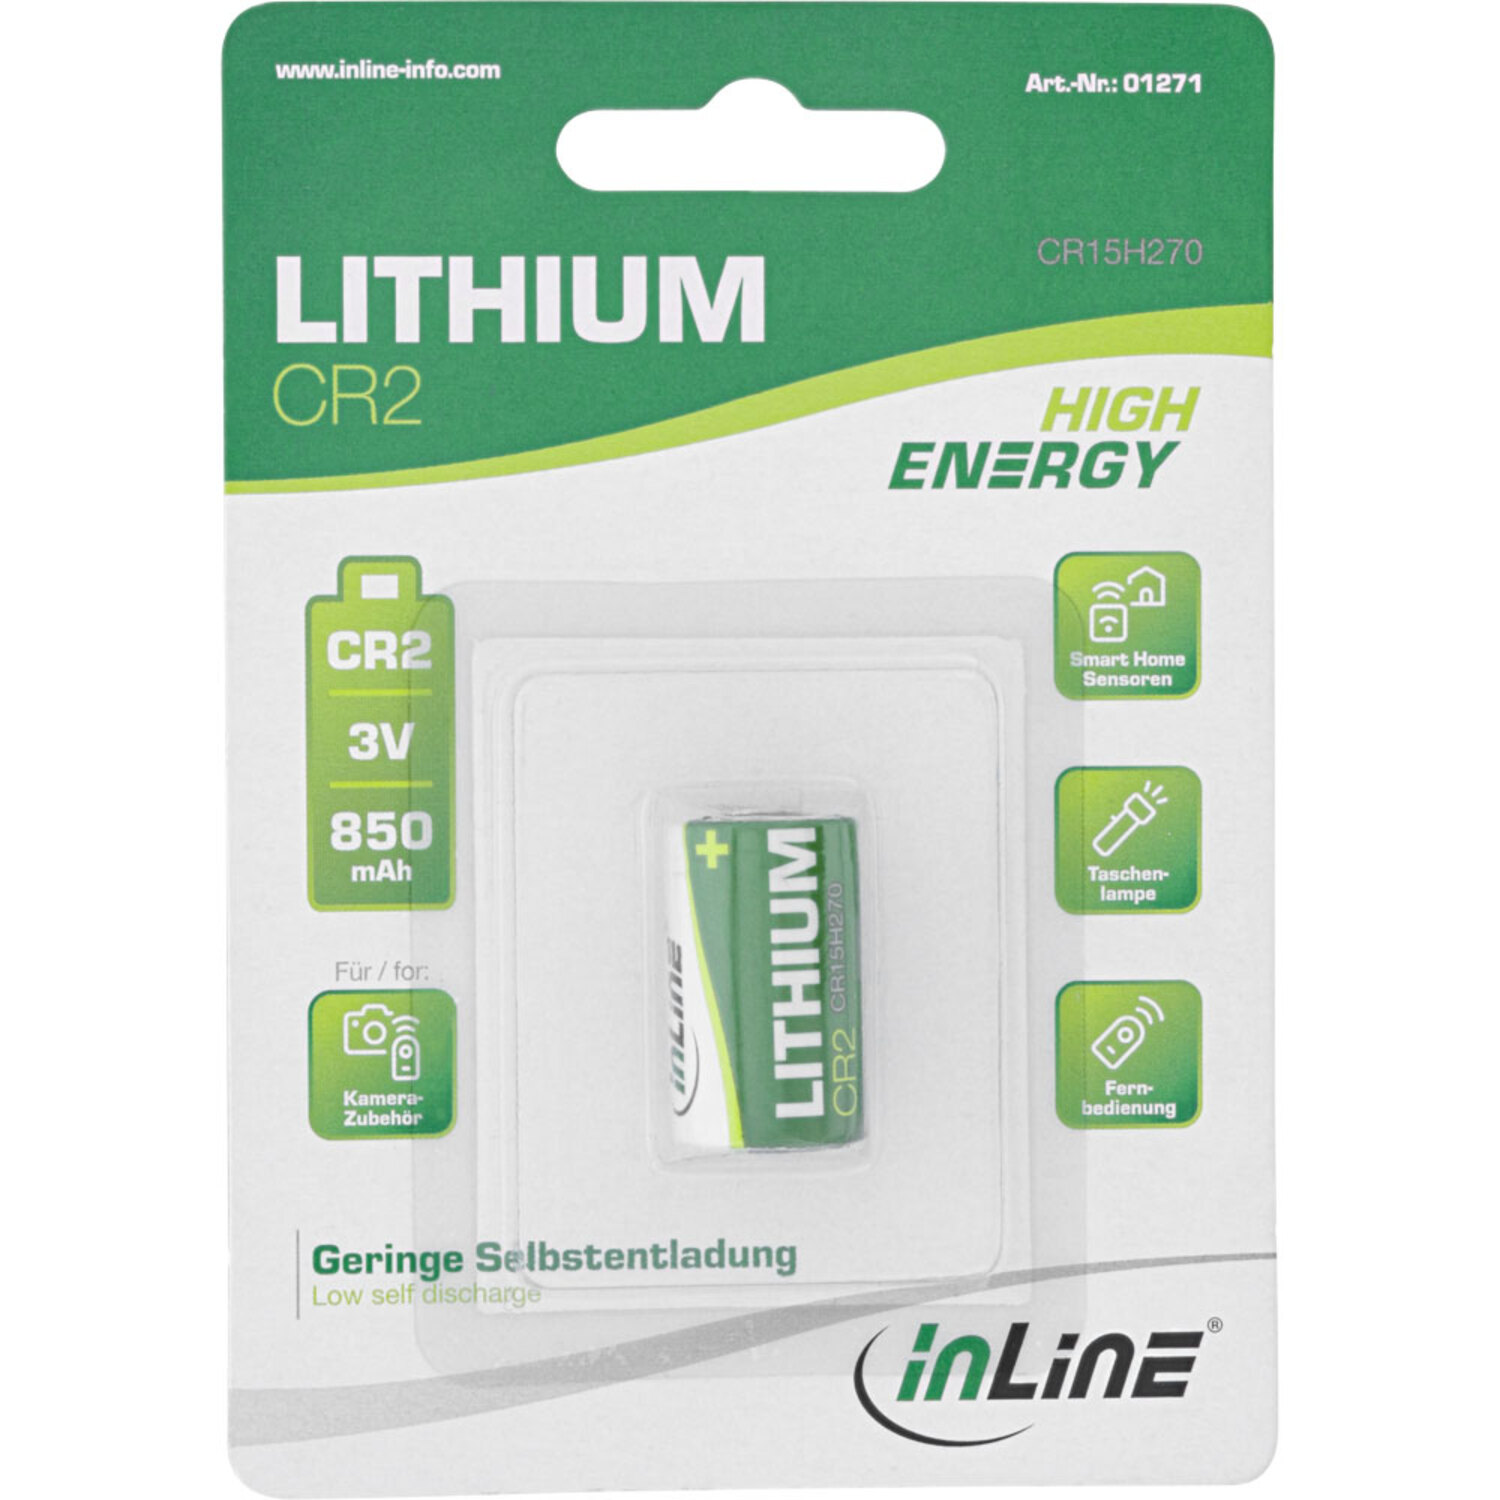 INLINE InLine® Lithium High Energy Batterie / Batterien Batterien 850mAh, 3V CR2, Fotobatterie